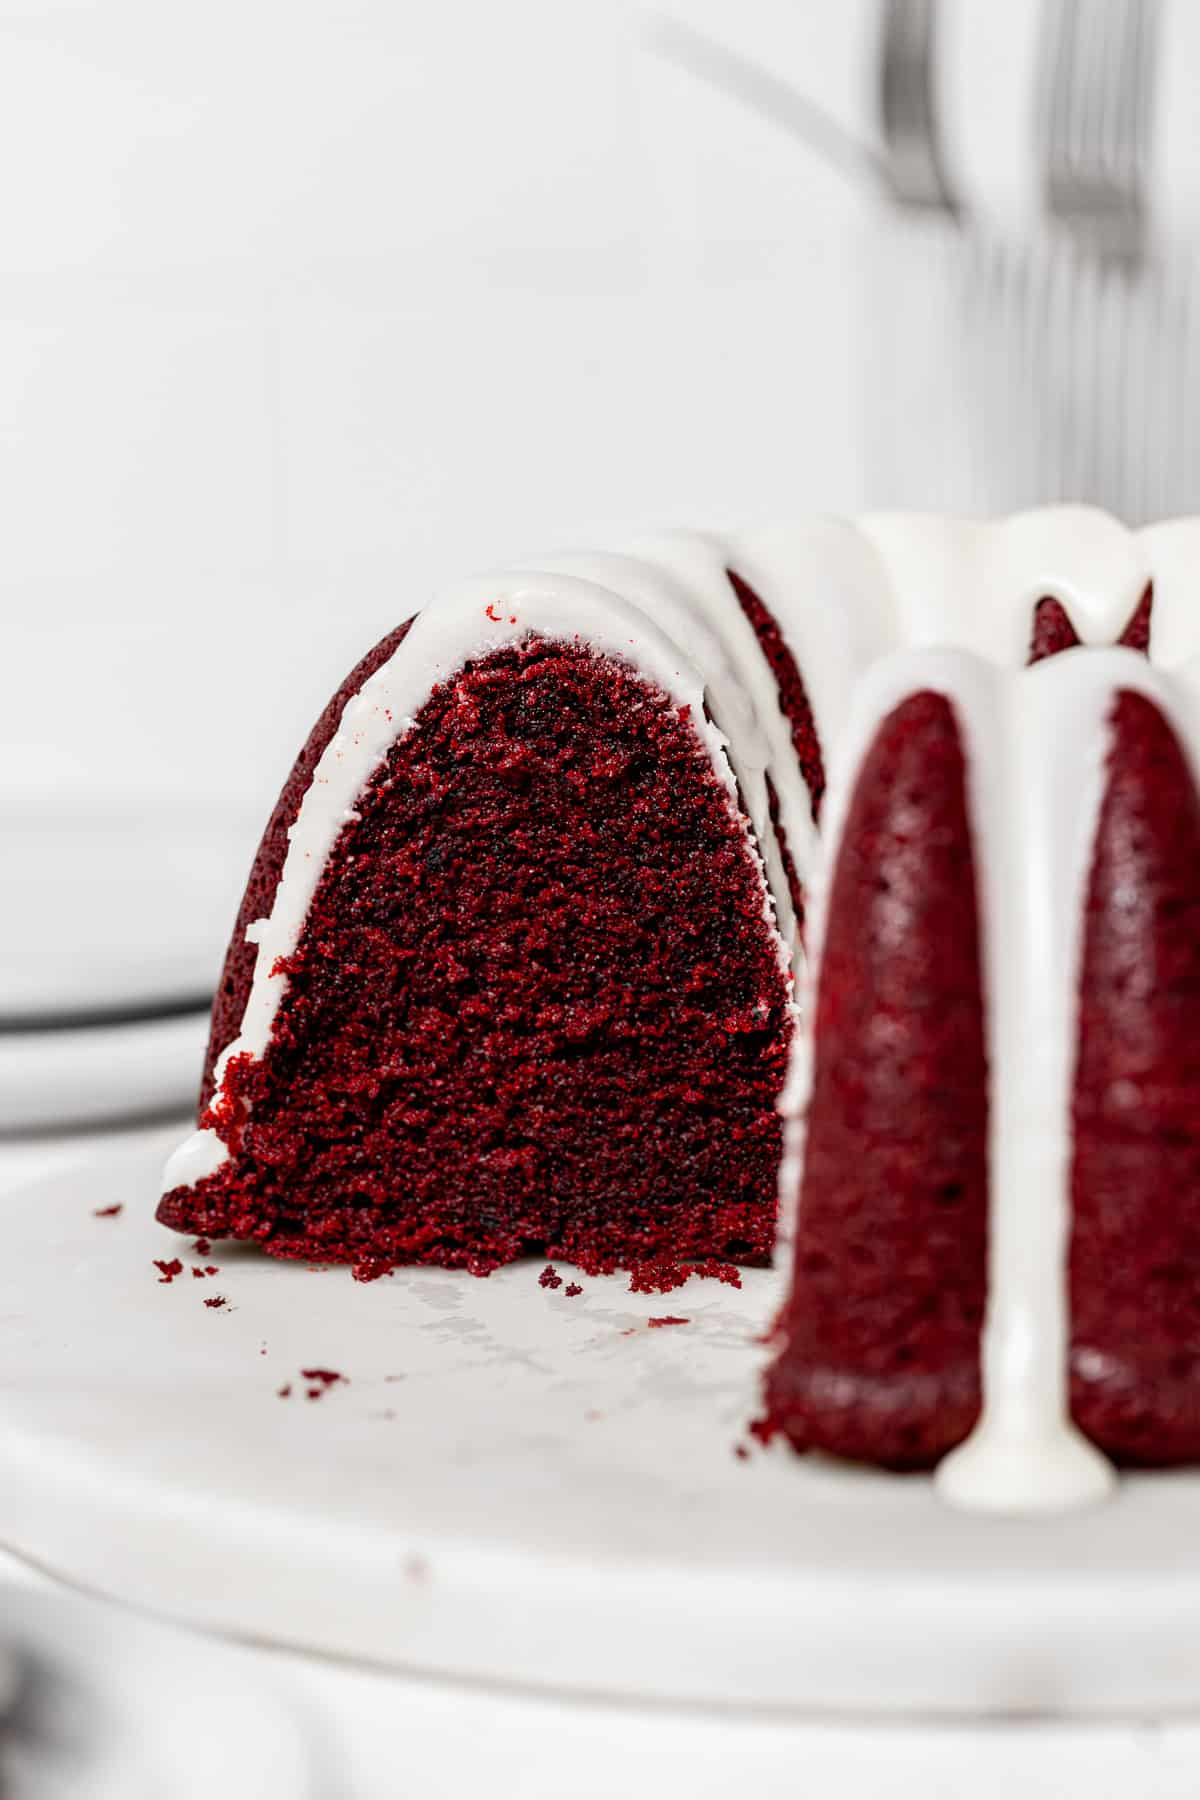 red velvet bundt cake cut to reveal inside texture.